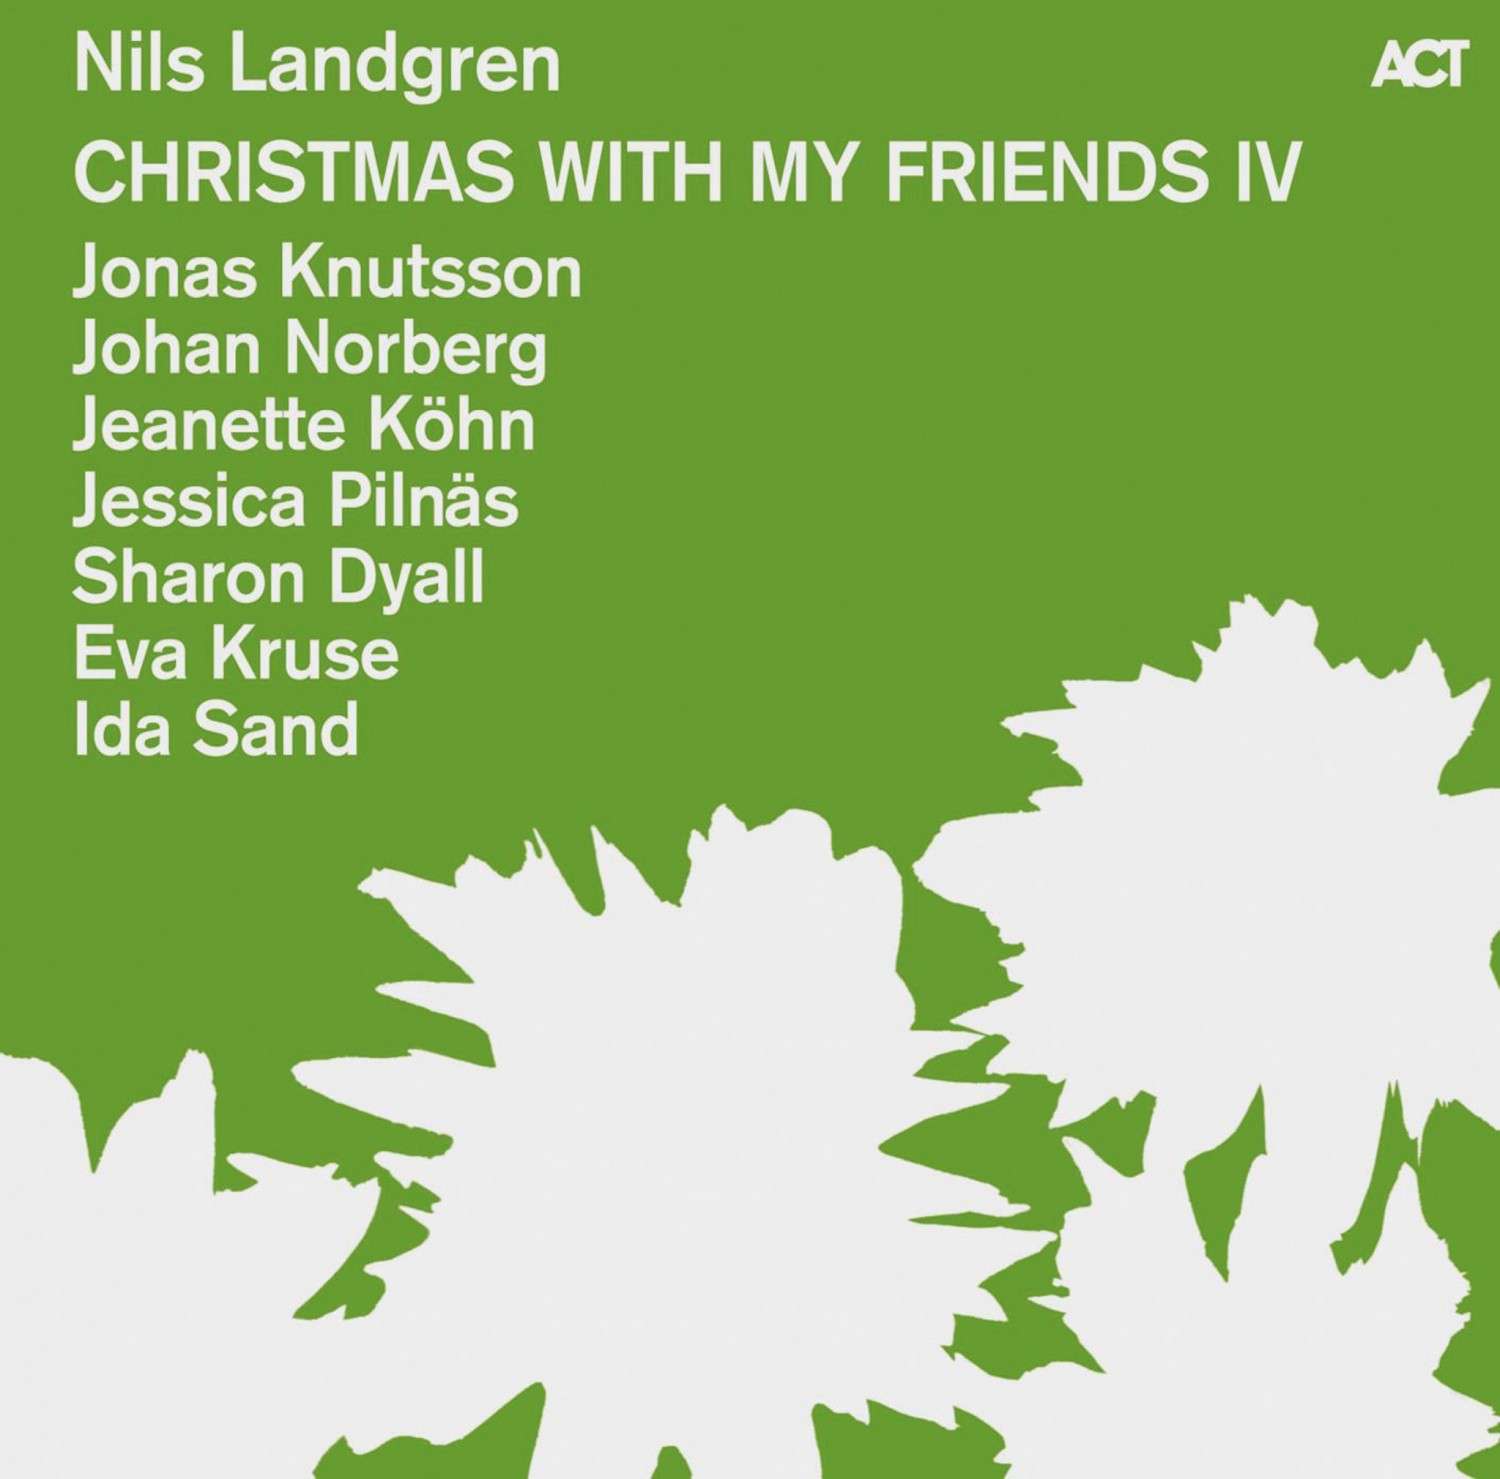 Download Nils Landgren - Christmas With My Friends IV (ACT) im Test, Bild 1